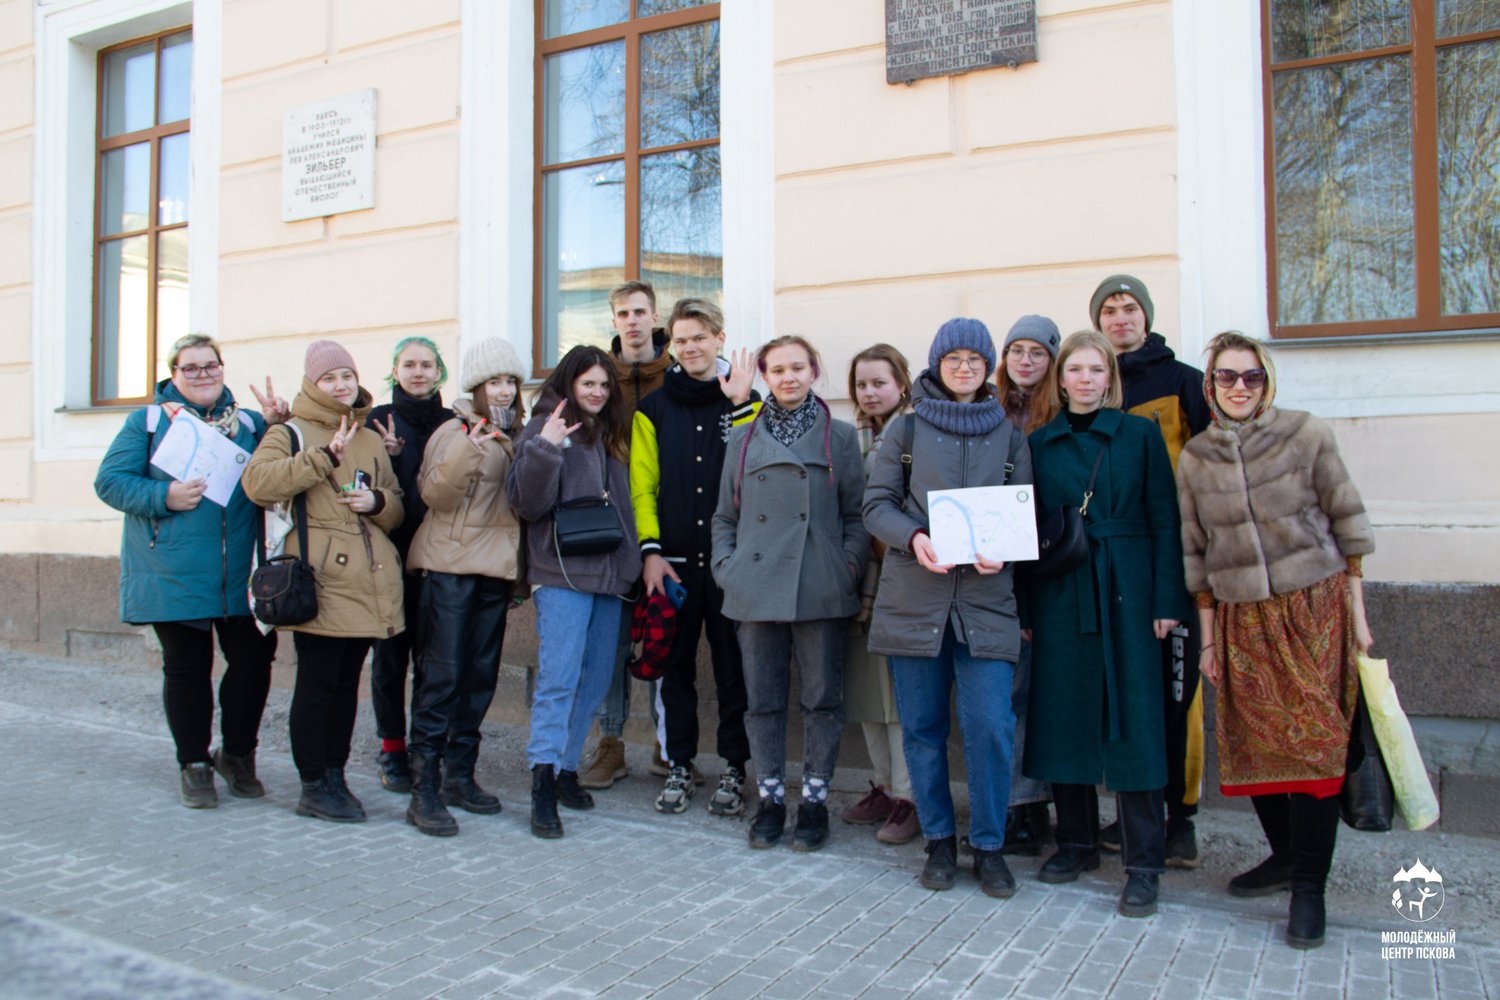 4 апреля Псковский городской молодёжный центр приглашает молодёжь в возрасте от 14 до 35 лет записаться на бесплатную экскурсию в музей бывшей мужской Губернской гимназии.